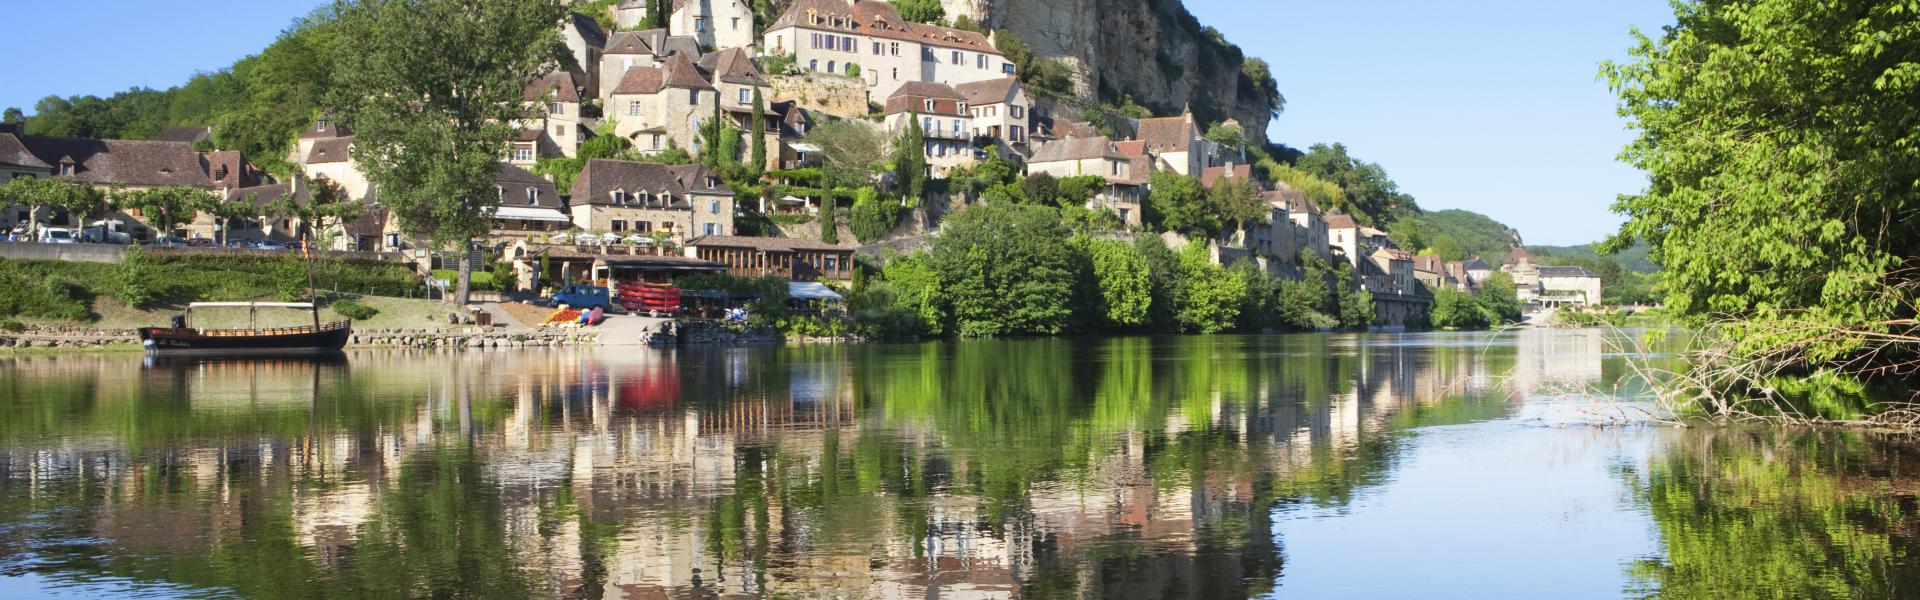 Castle and river Dordogne Beynac-et-Cazenac; Dordogne; France